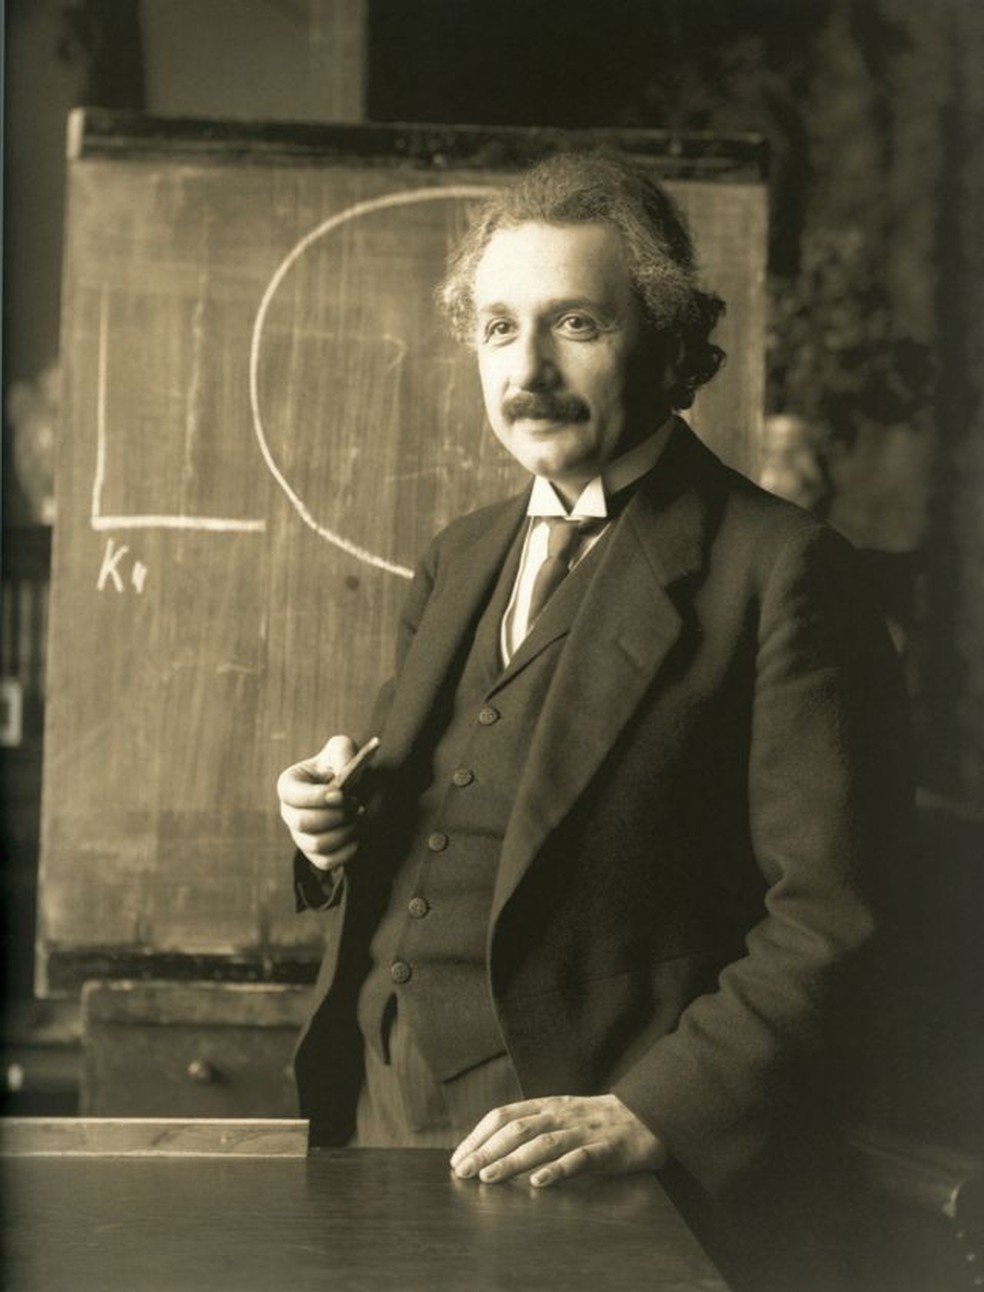 'A gravidade é a primeira coisa em que não pensamos', segundo Einstein — Foto: FERDINAND SCHMUTZER/BIBLIOTECA NACIONAL DA ÁUSTRIA